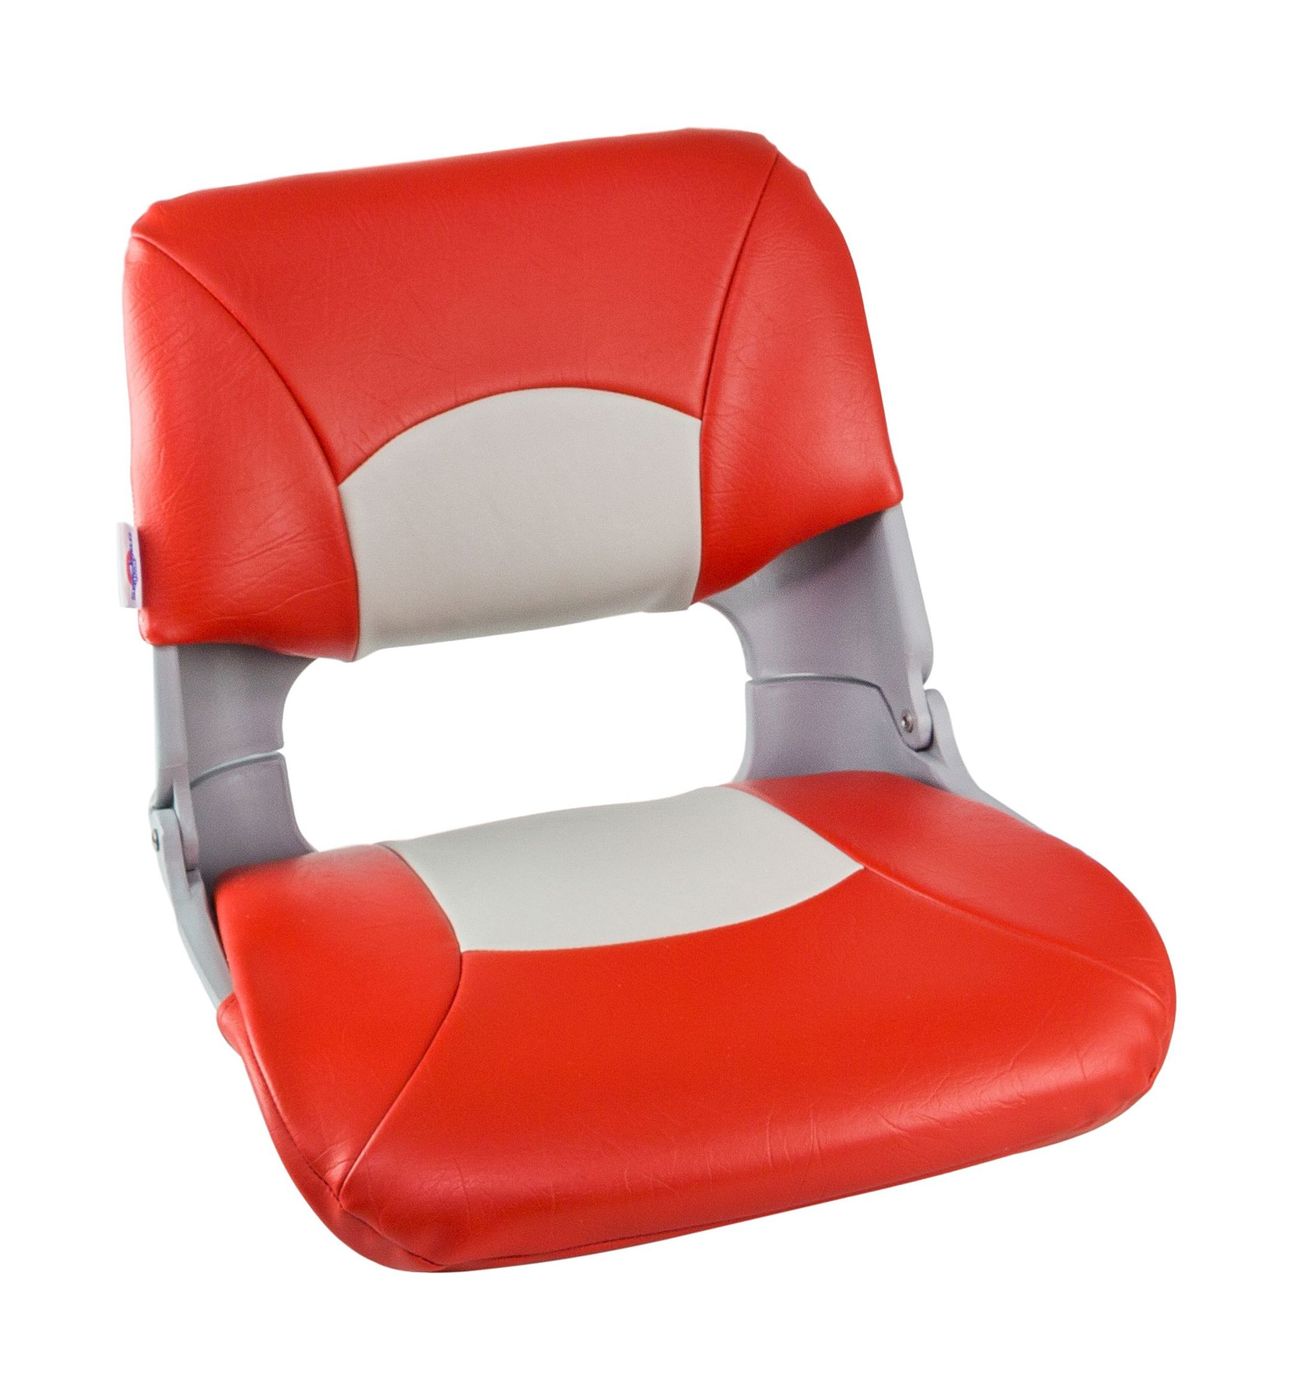 Кресло складное мягкое SKIPPER, цвет серый/красный 1061018 кресло складное мягкое traveler белый серый 1061104c